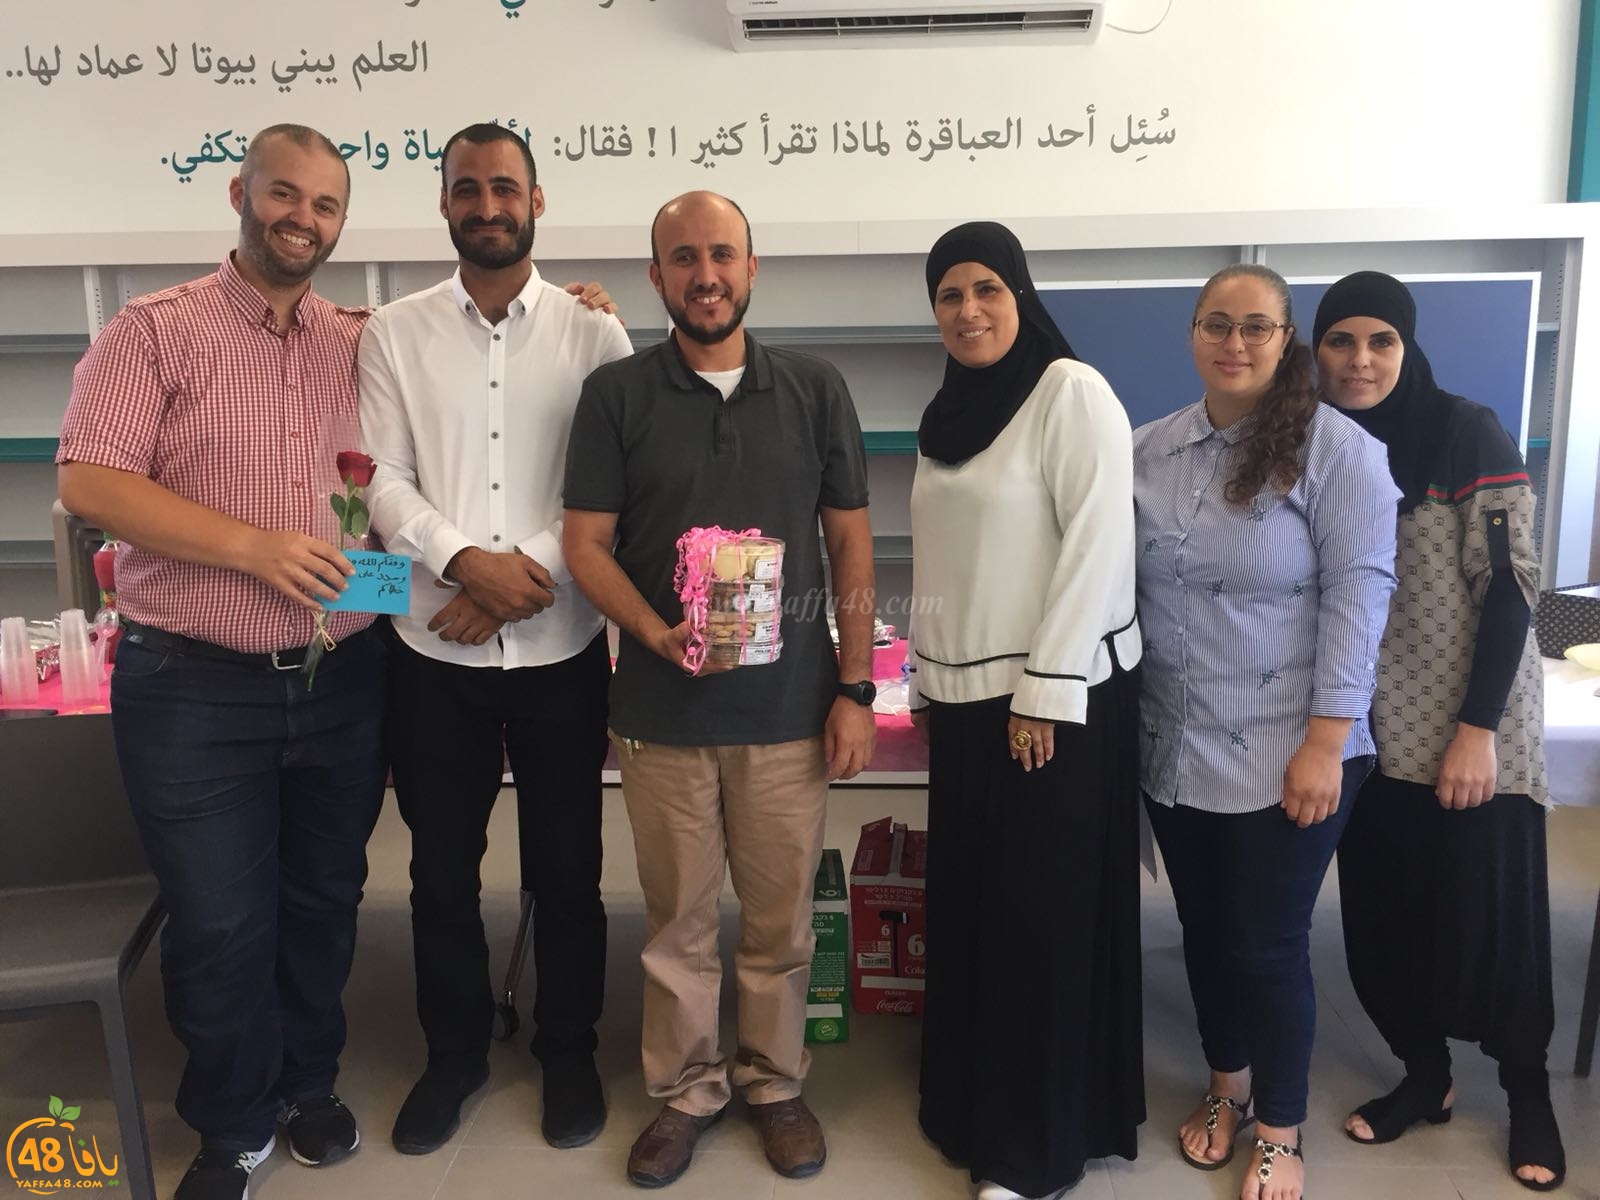 اجتماع لطاقم المعلمين والهيئة التدريسية في مدرسة يافا المستقبل عشية انتهاء العام الدراسي